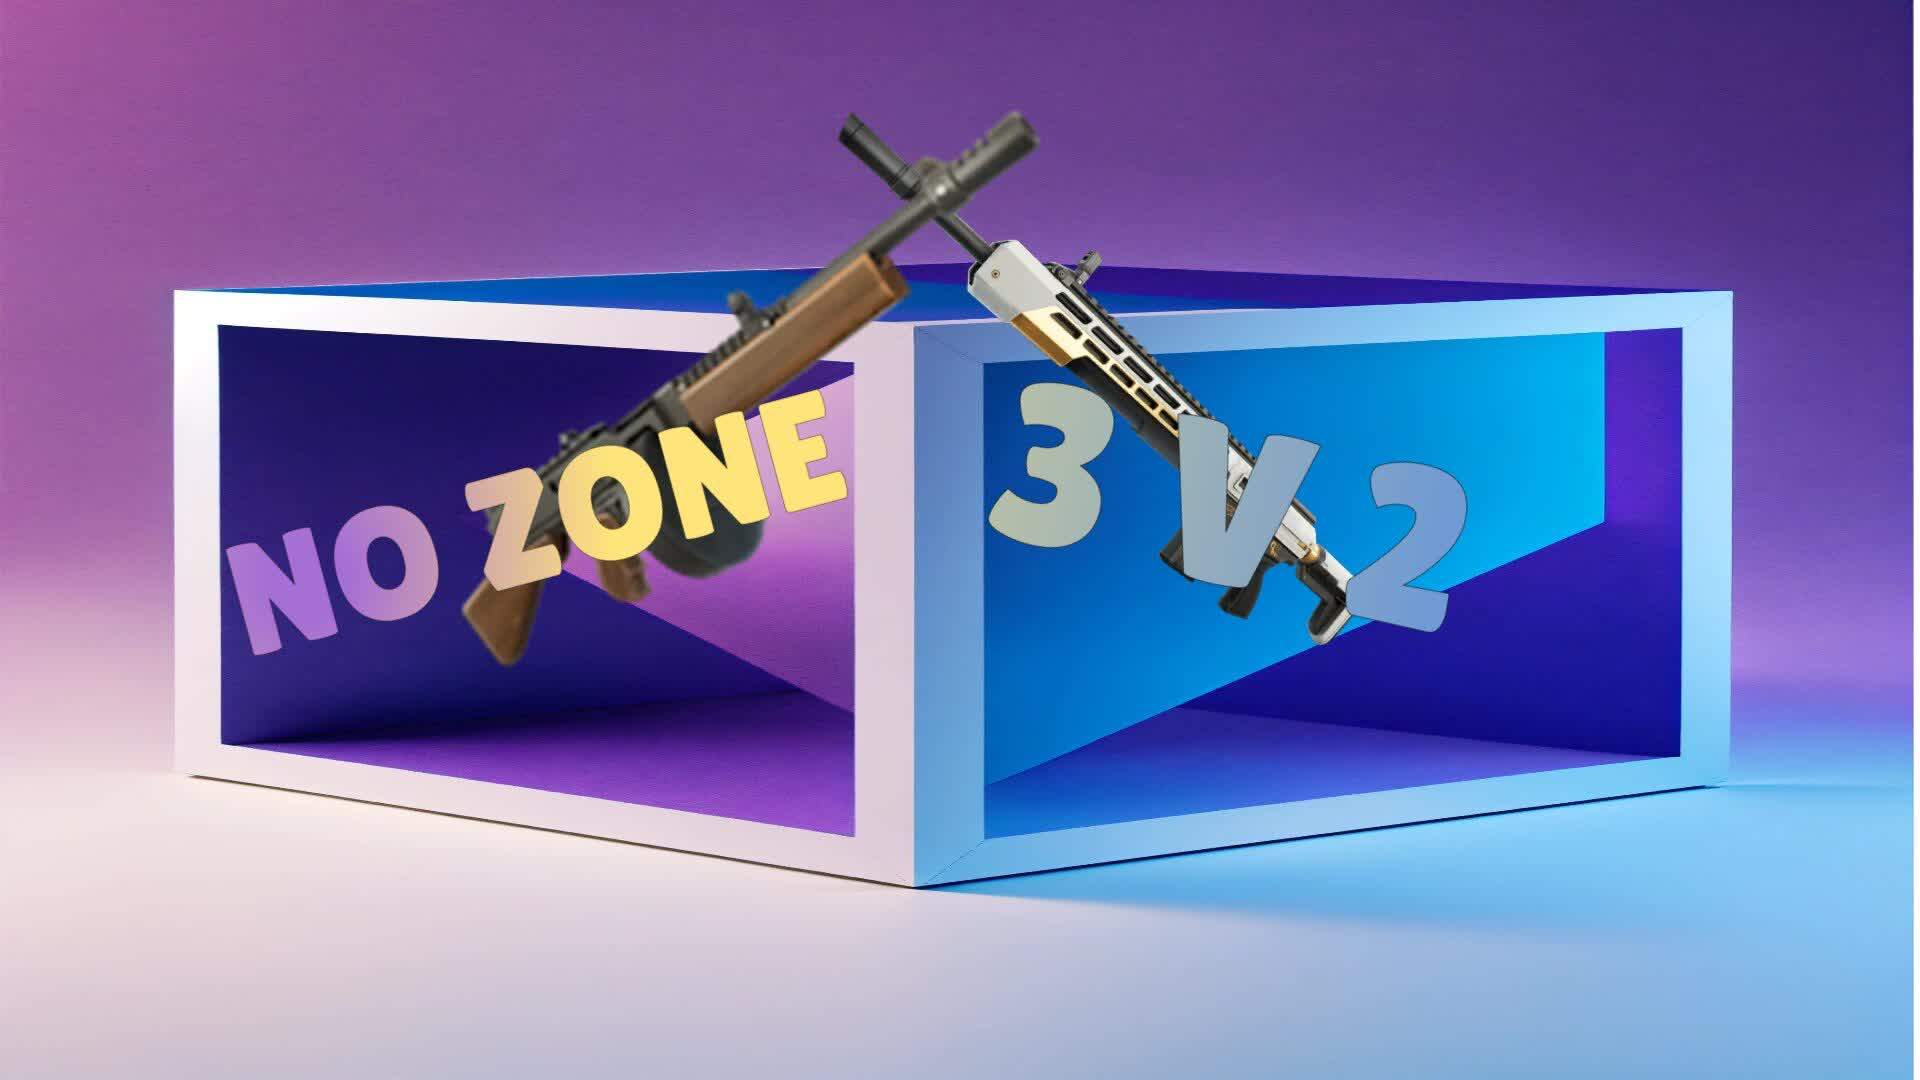 NO ZONE 3V2